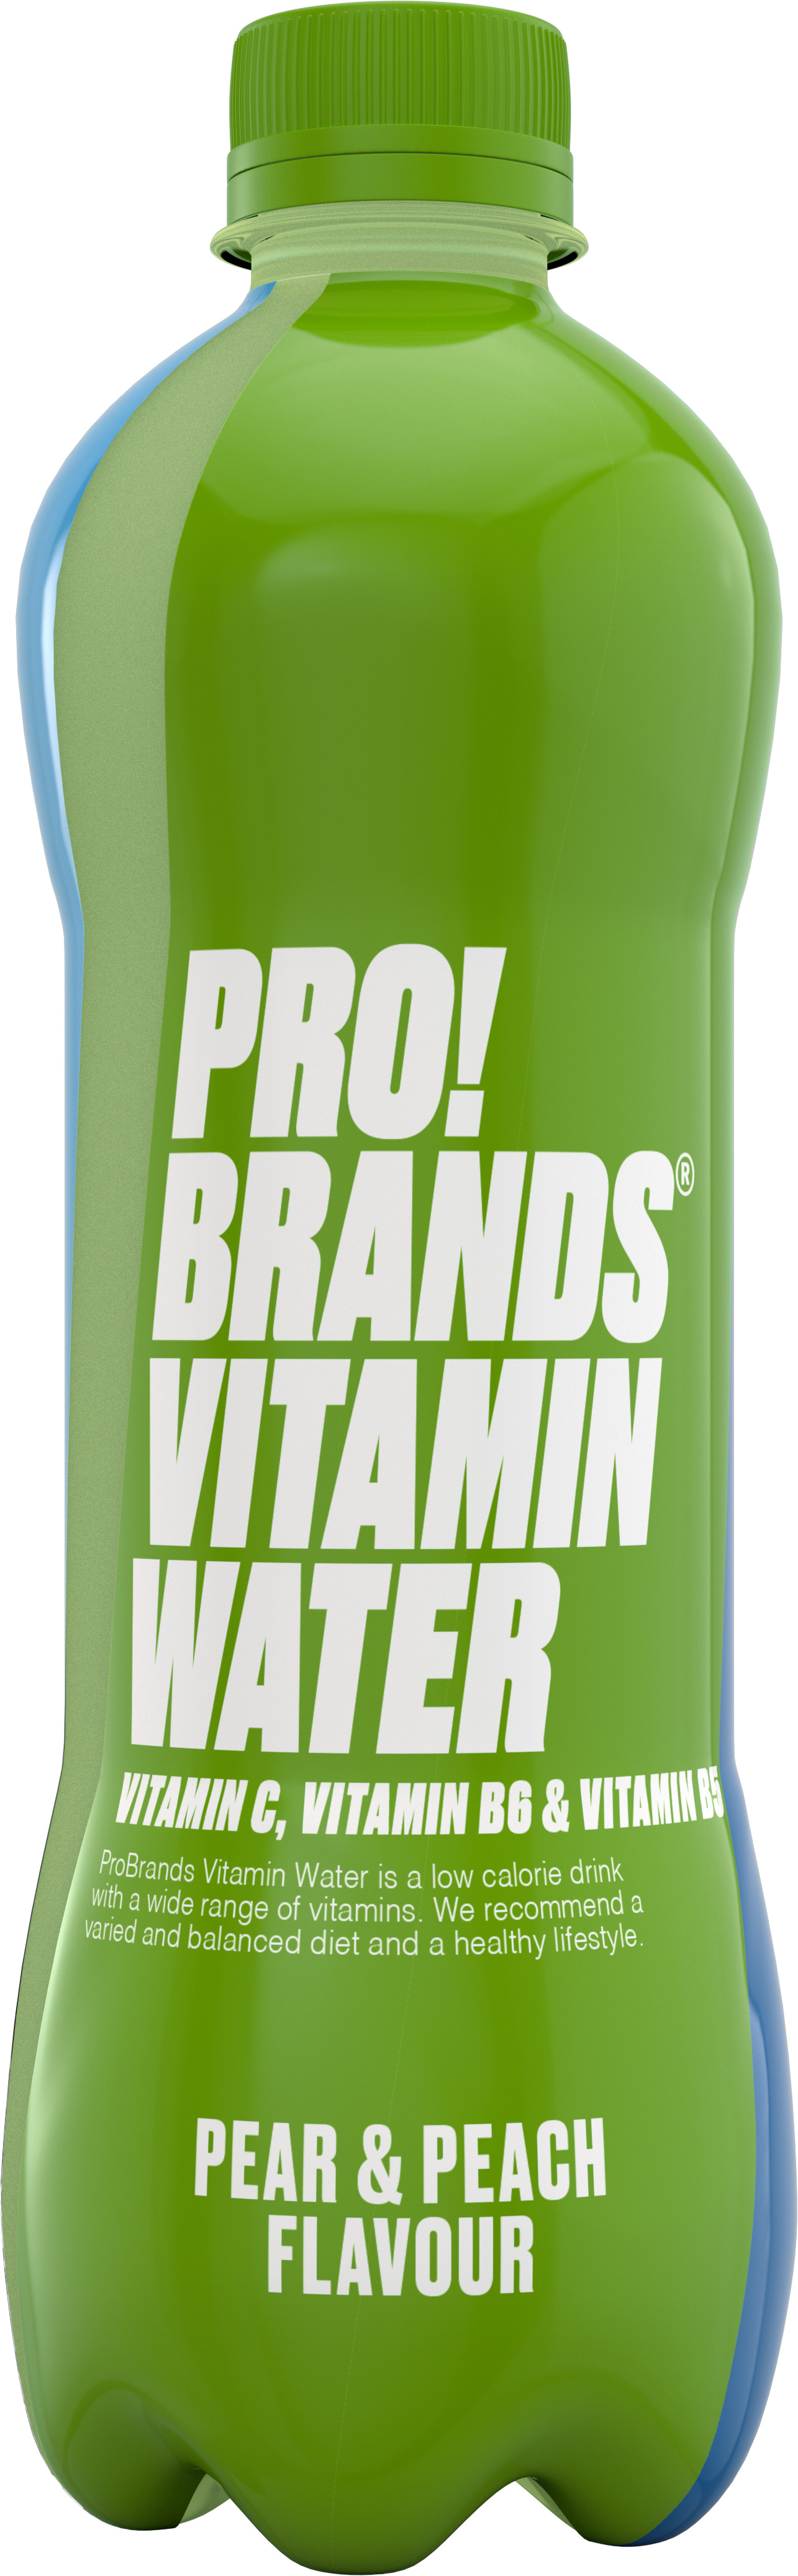 ProBrands Vitamin Water Pear Peach 555 ml